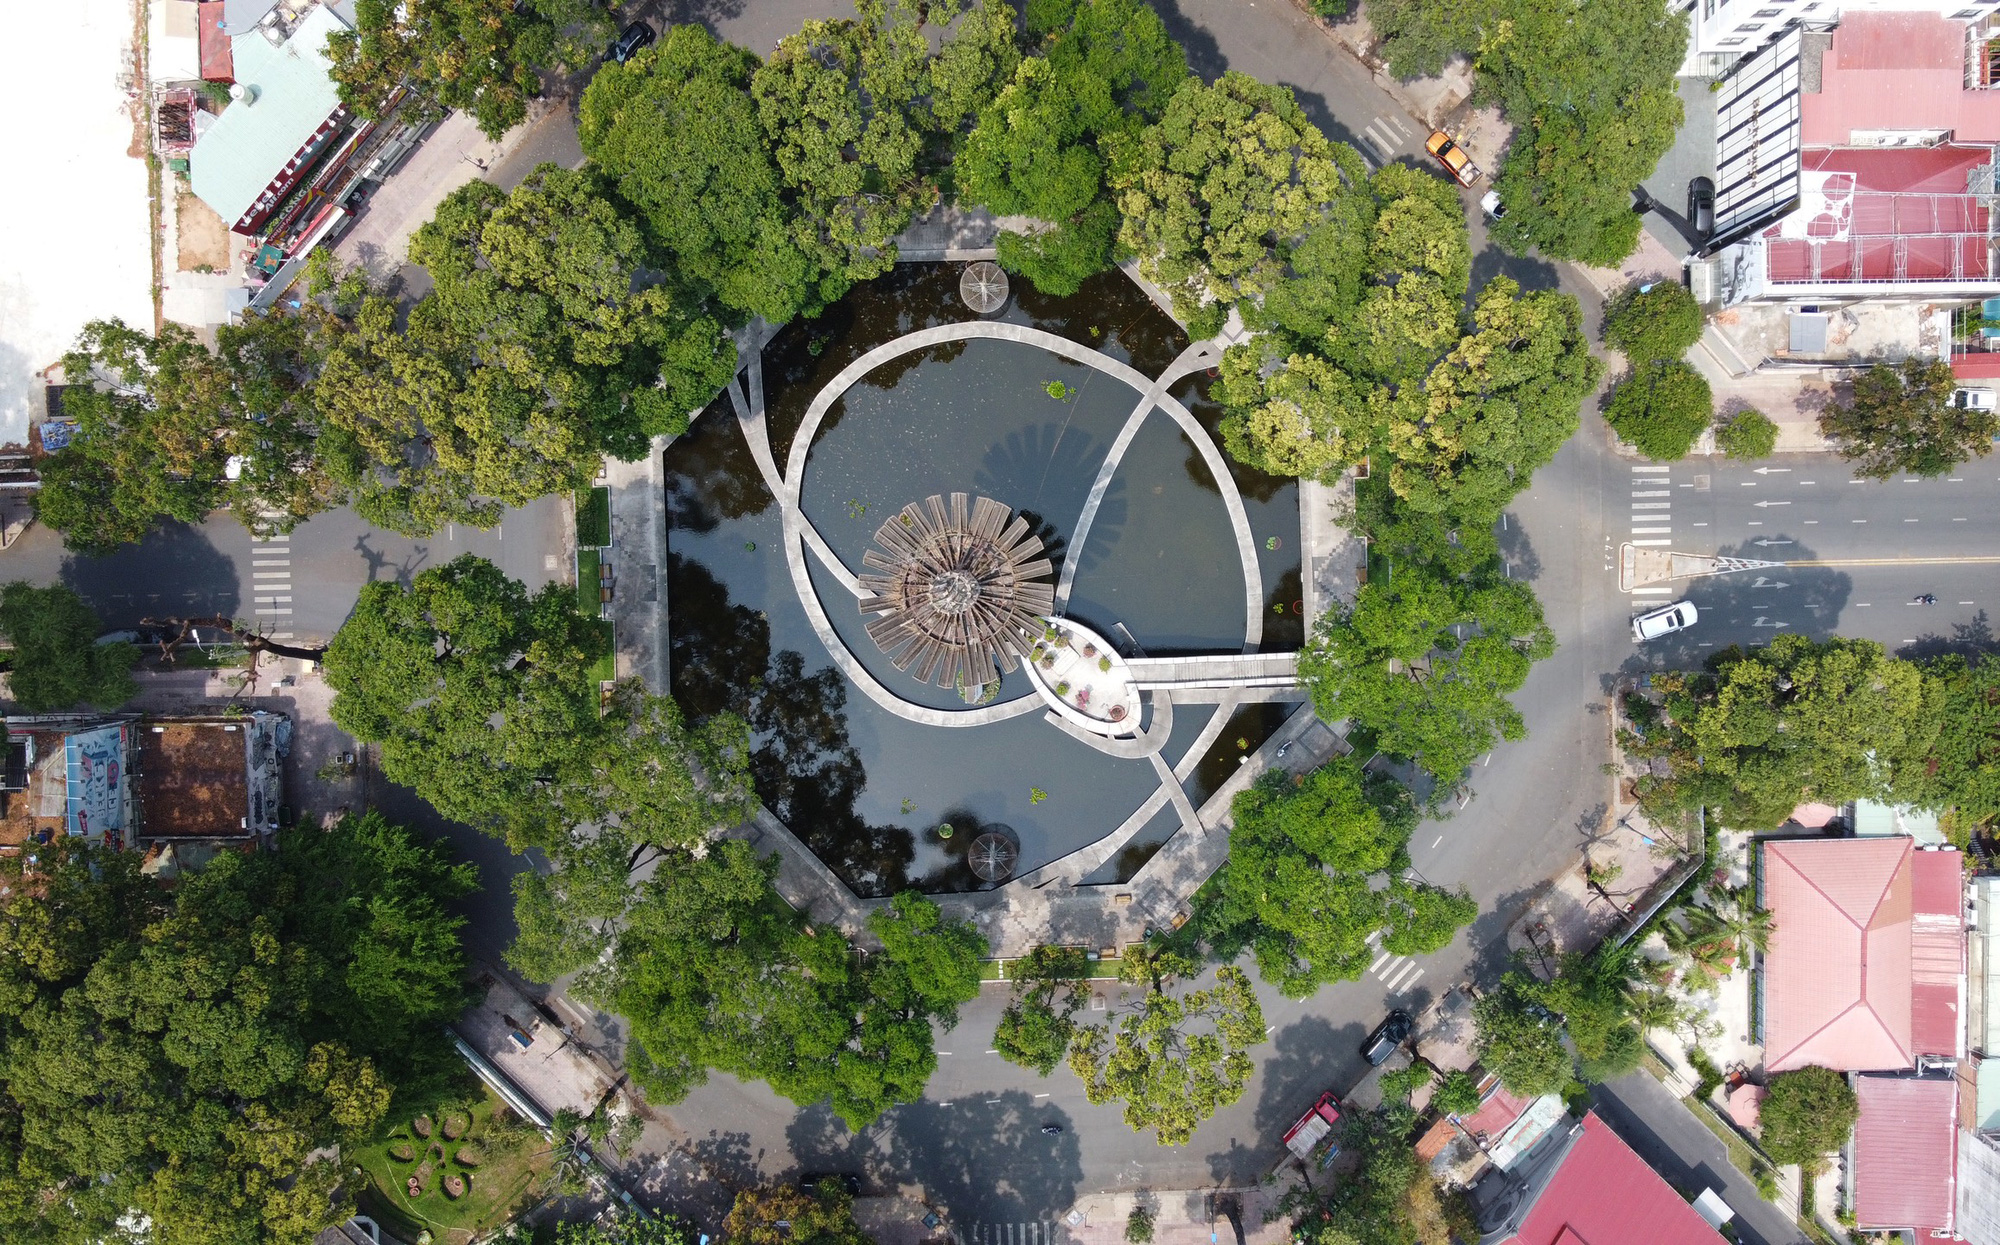 Cải tạo Hồ Con Rùa: Cải tạo Hồ Con Rùa là một tác phẩm kiến trúc độc đáo tại Việt Nam. Với sự phối hợp tuyệt vời giữa kiến trúc và thiết kế, công trình này đem lại không gian sống tuyệt vời và đầy màu sắc cho cộng đồng. Xem hình ảnh liên quan và tận hưởng sự độc đáo của công trình này!